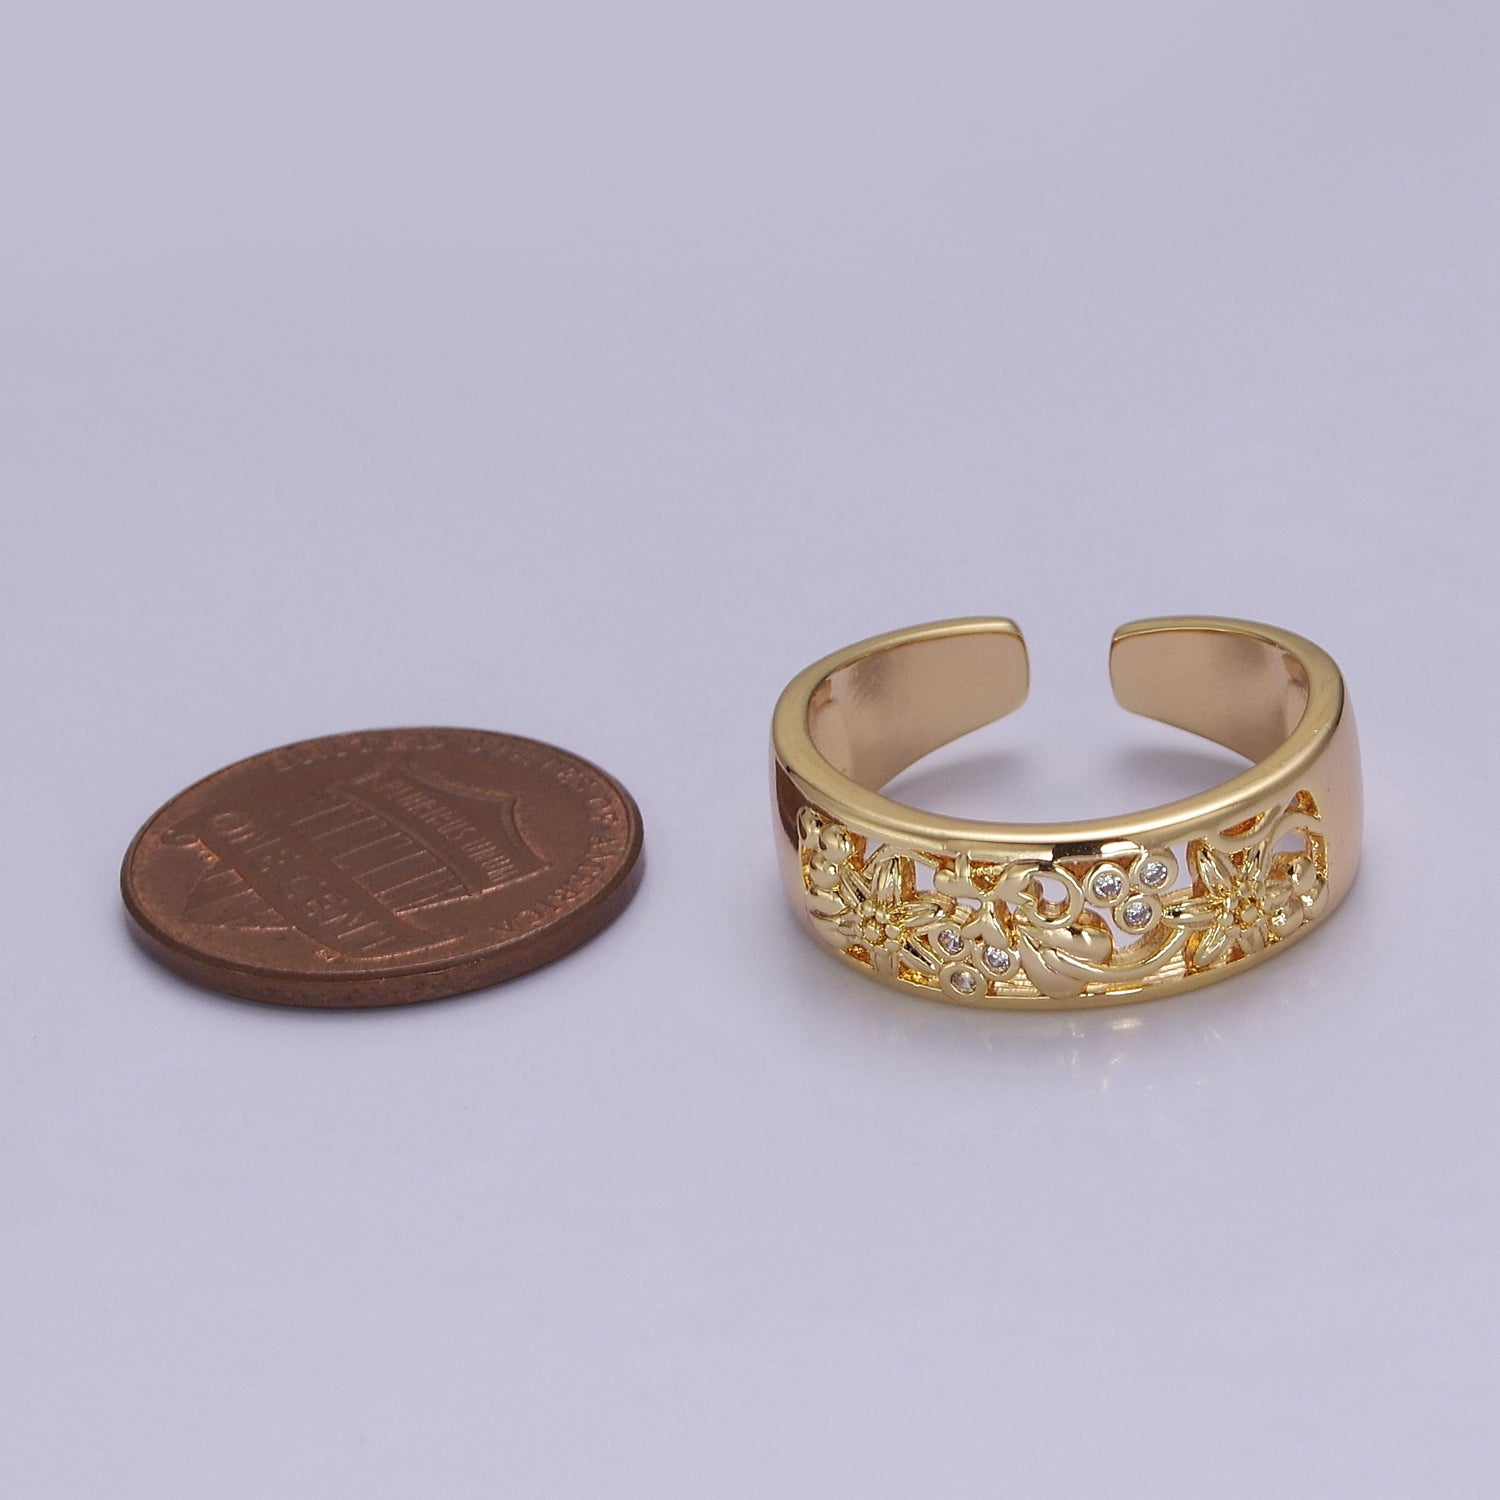 Dainty Art Deco Ring Flower Carved Design 18k Gold Filled Open Adjustable Ring V-228 - DLUXCA